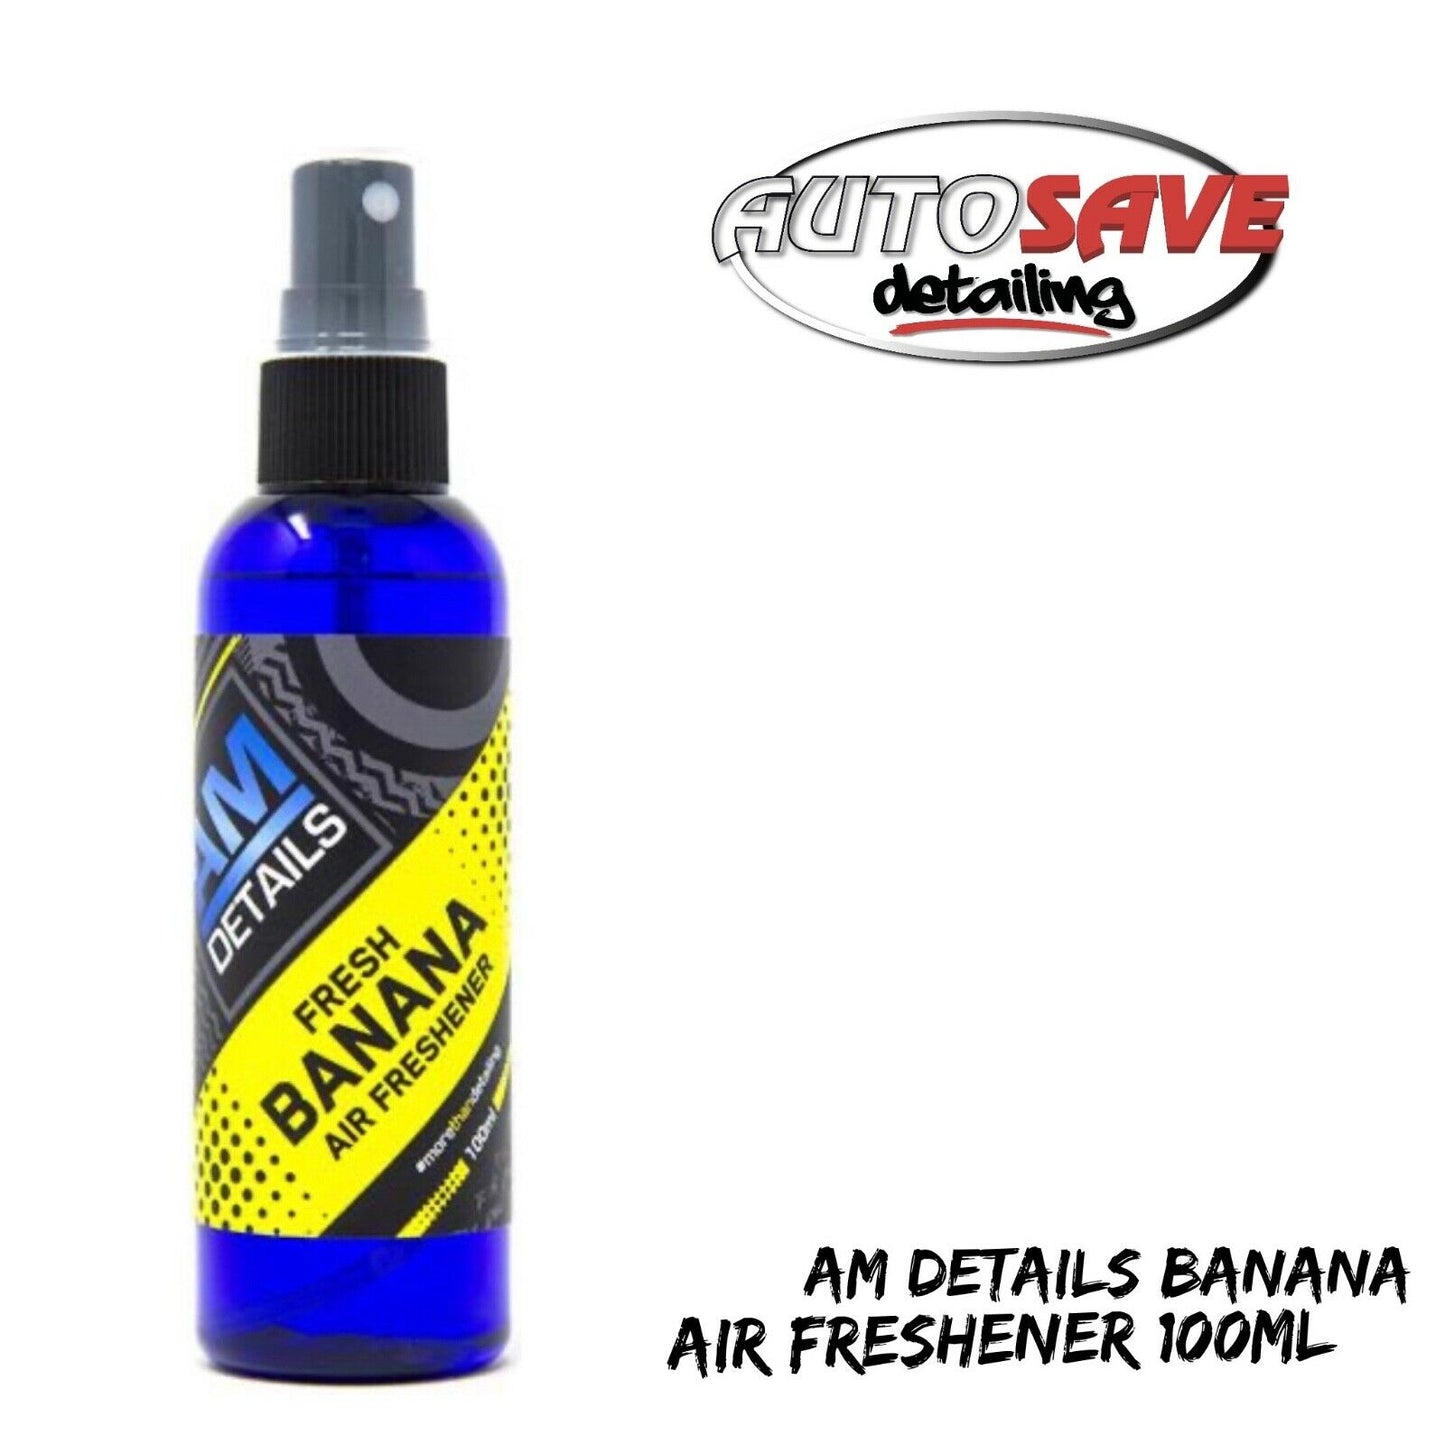 AM Details Banana Air Freshener 100ml